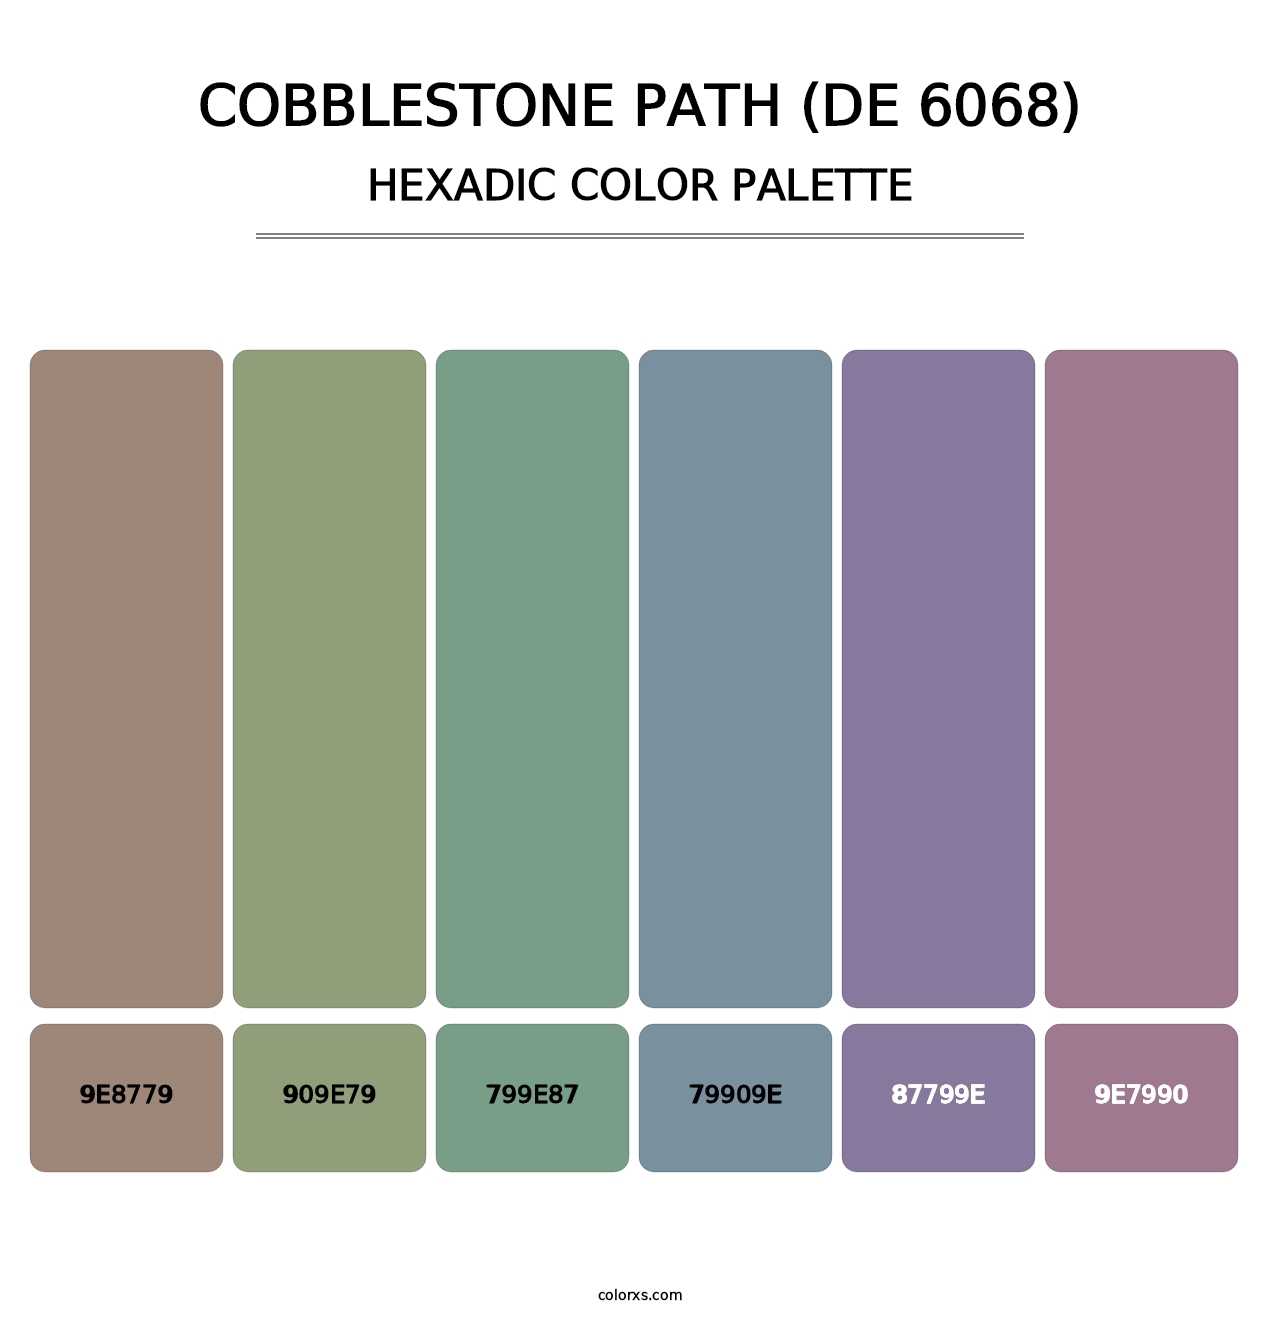 Cobblestone Path (DE 6068) - Hexadic Color Palette